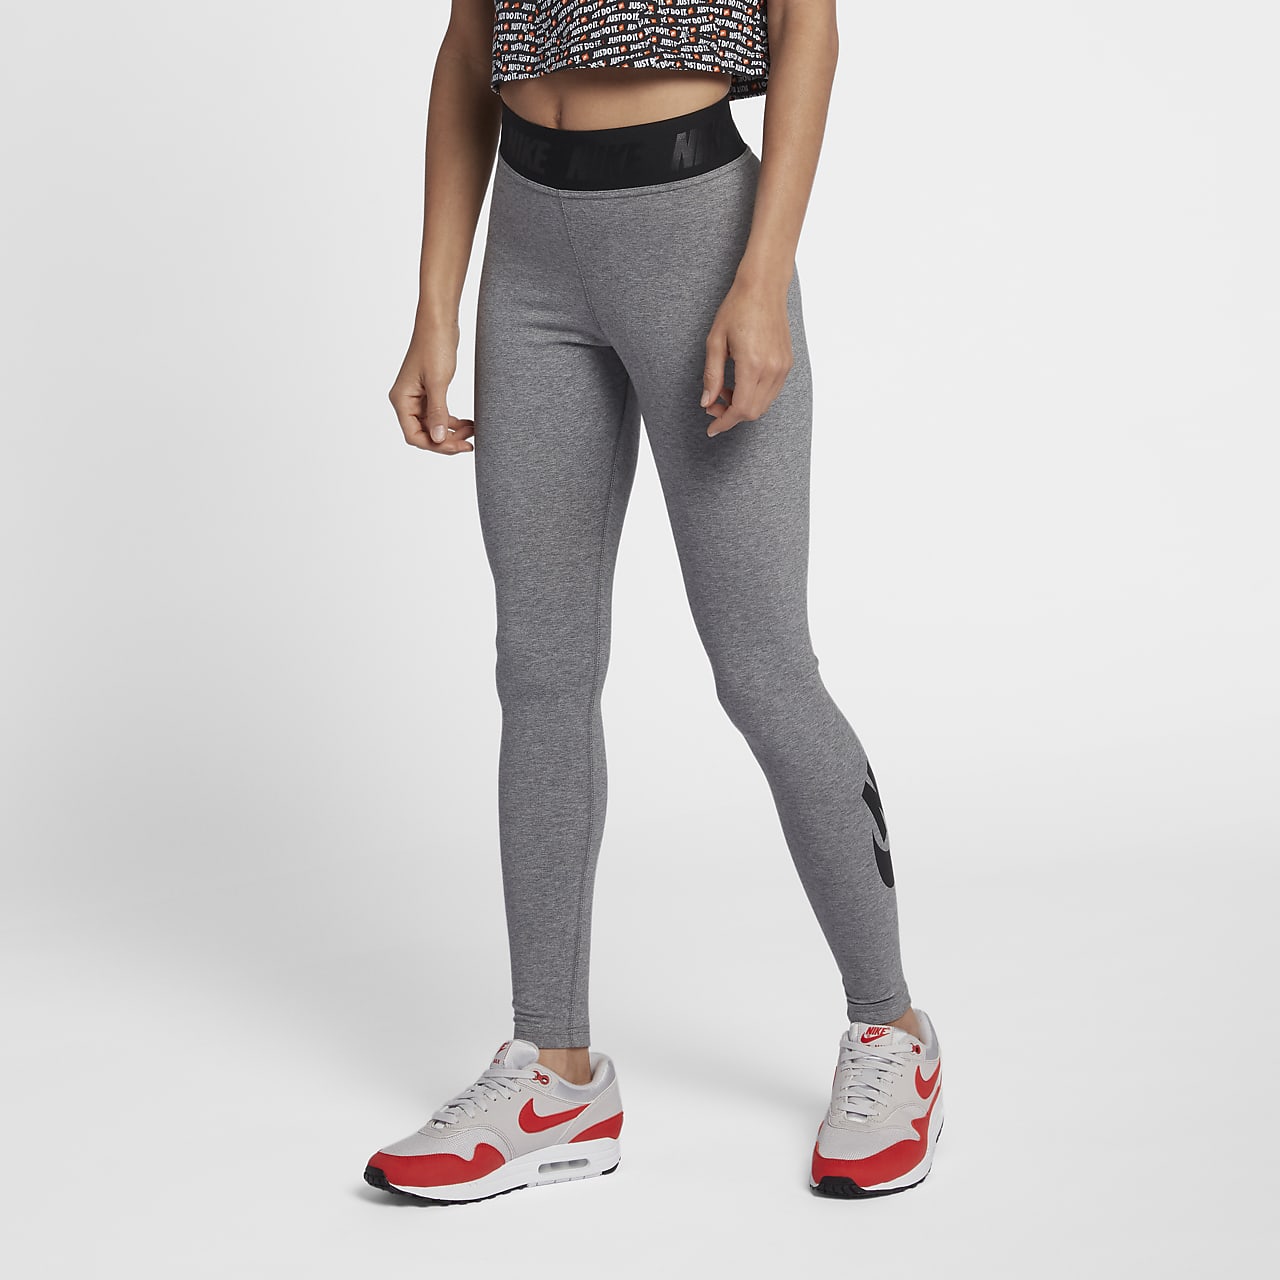 Women's Leggings & Tights. Nike HR